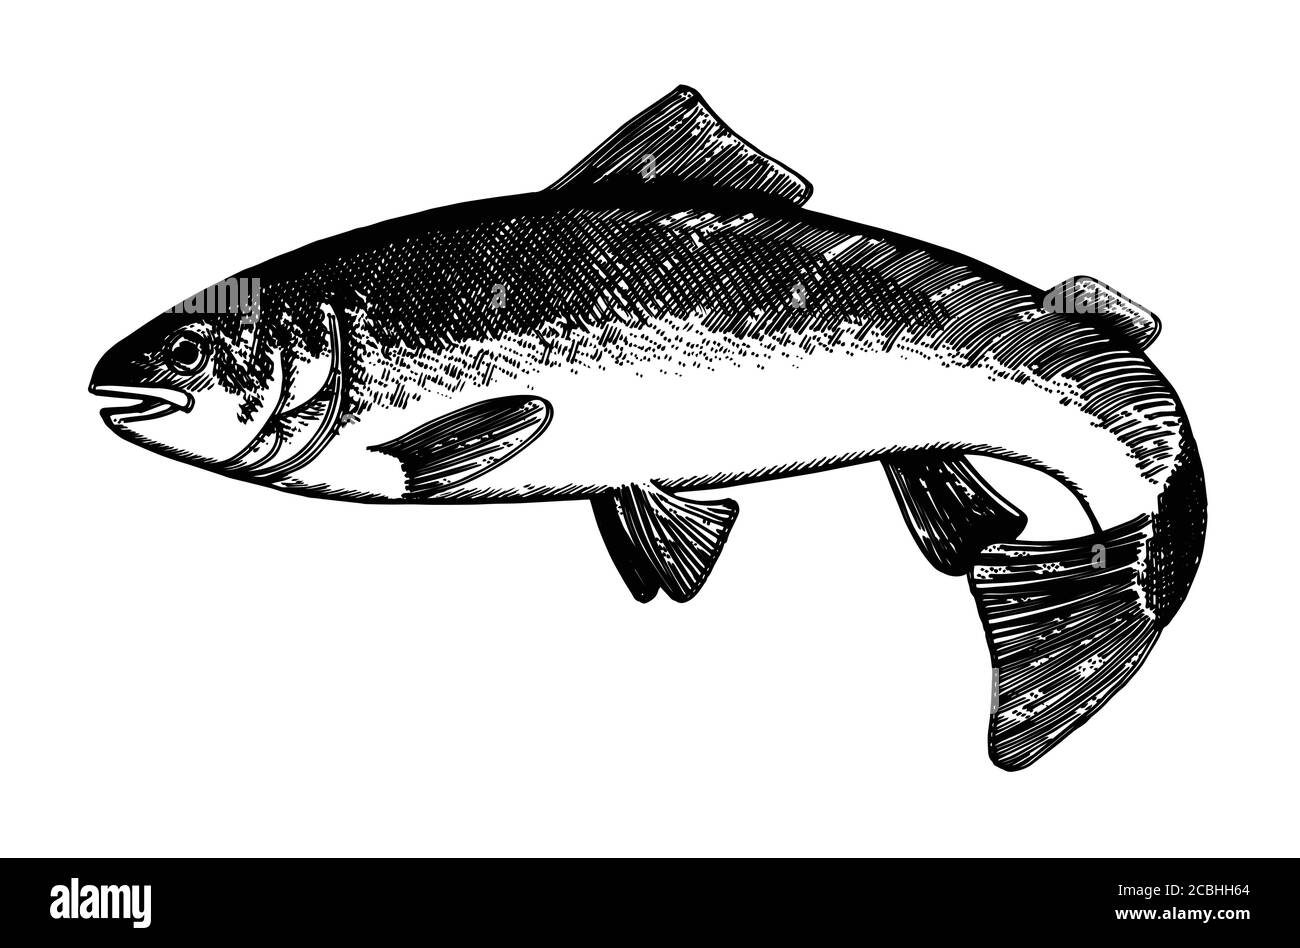 Hand Zeichnung Fisch Vektor. Bleistift, Papier, Filzstift. Isoliertes Objekt auf weißem Hintergrund. Fisch in Bewegung, in vivo. Teich, Fluss, Meer. Wedelt Schwanz, fl Stock Vektor